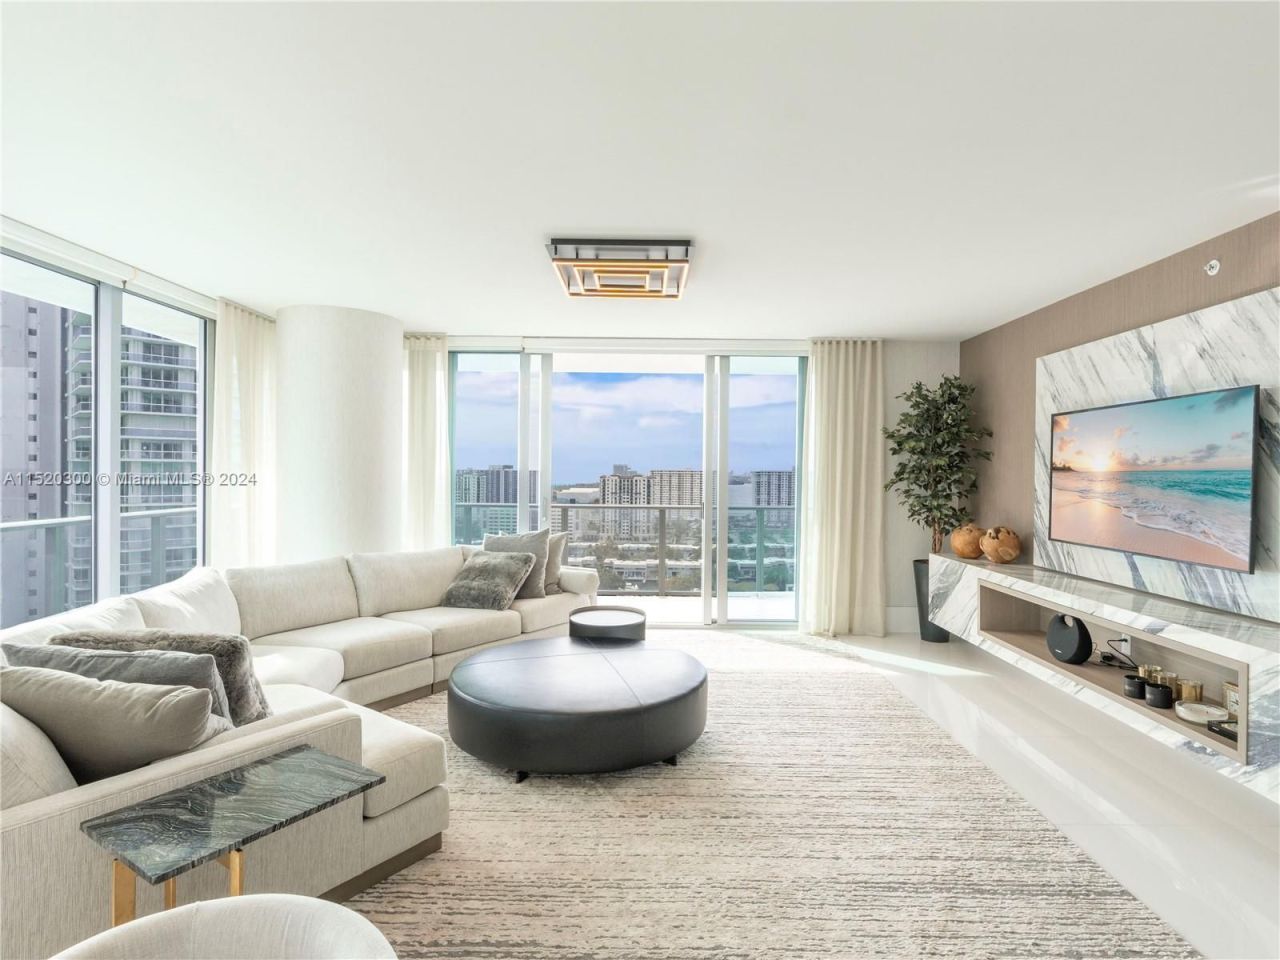 Appartement à Miami, États-Unis, 180 m2 - image 1